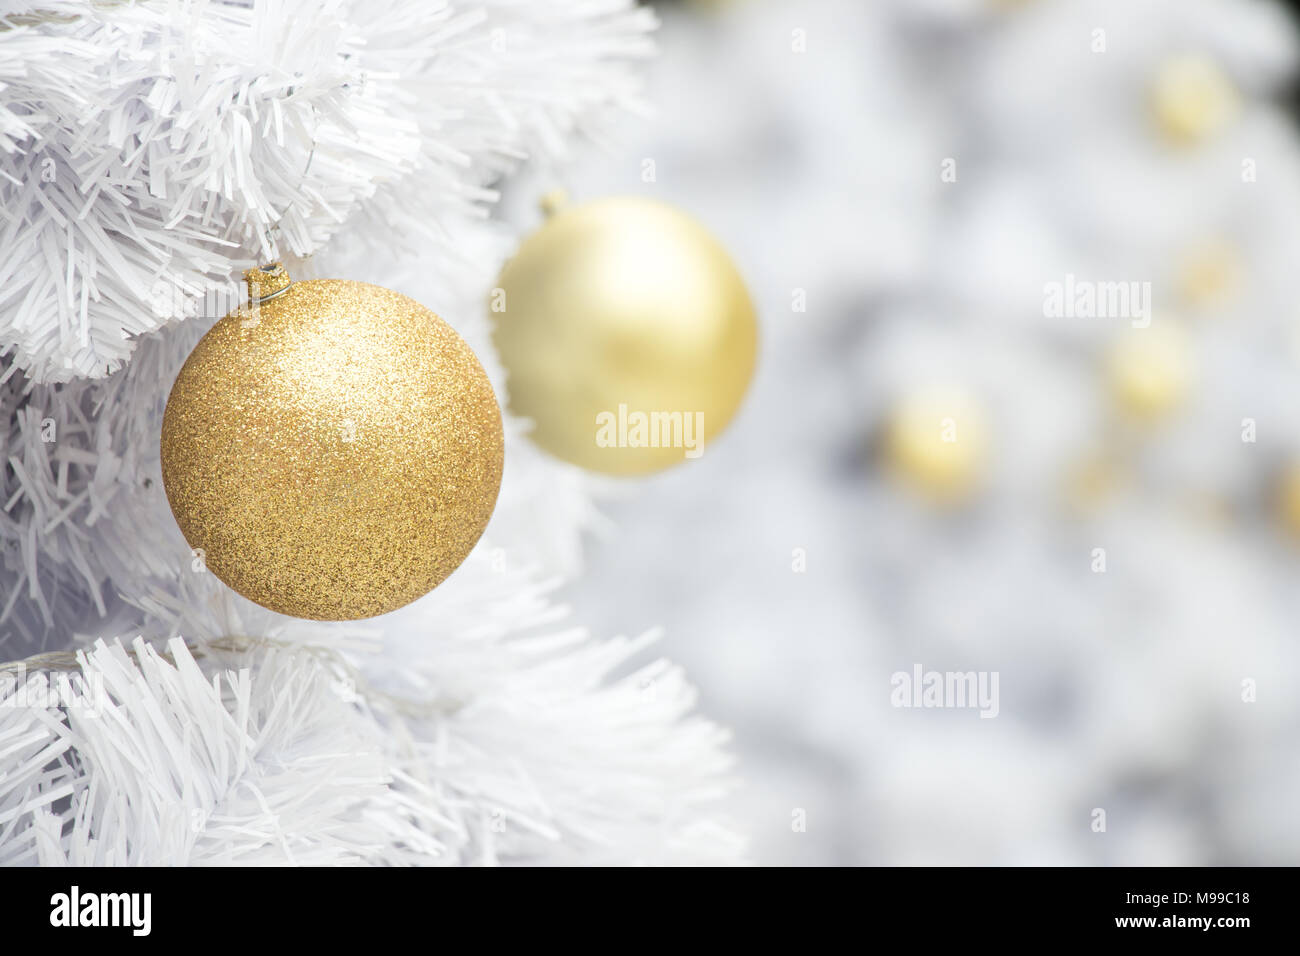 Sfondi Natalizi Dorati.Sfera In Oro Bianco Sul Ramo Di Albero Di Natale Sfondo Decorazione Per Natale E Anno Nuovo Festival Foto Stock Alamy